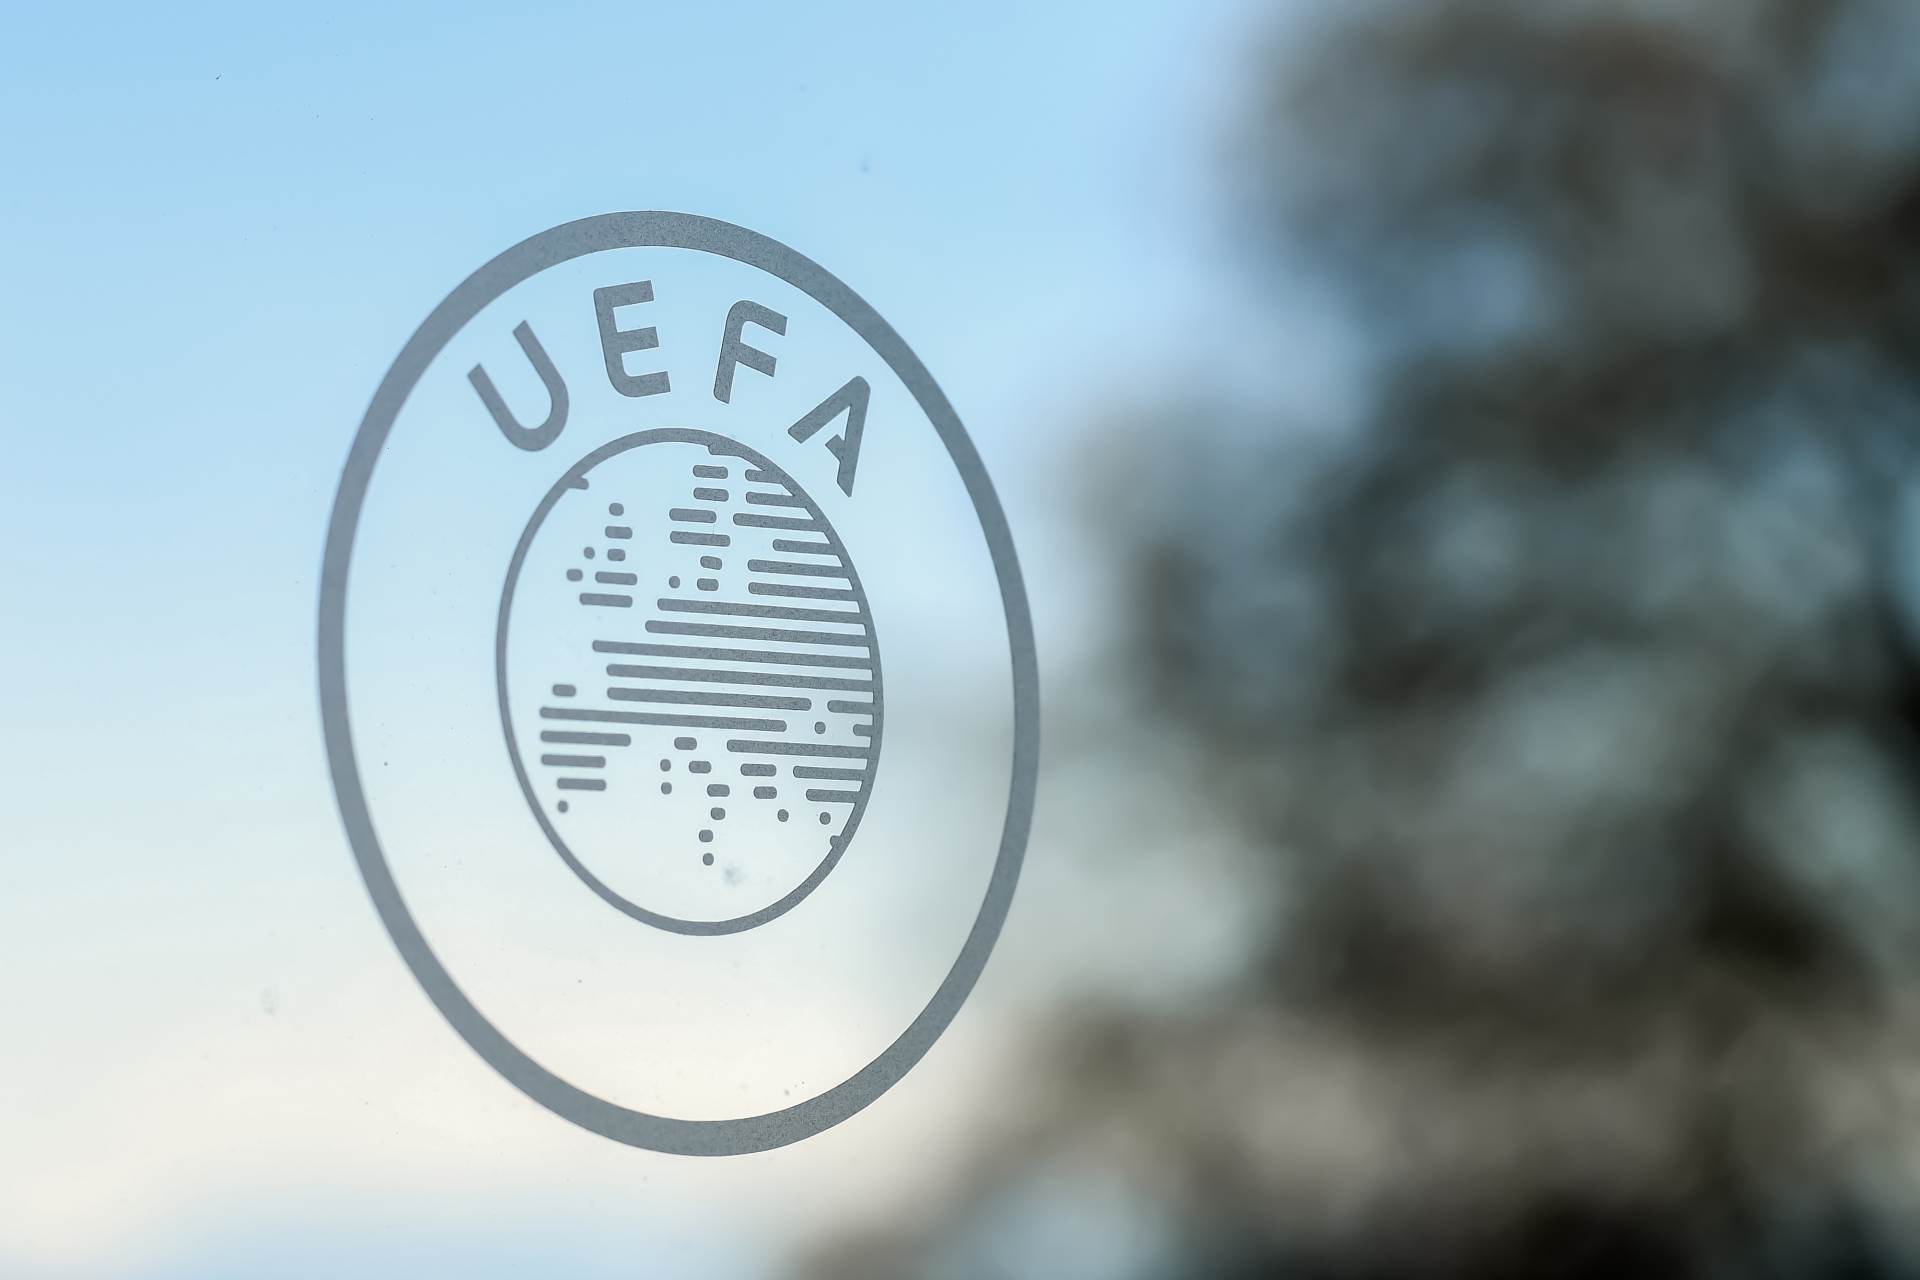  uefa logo 